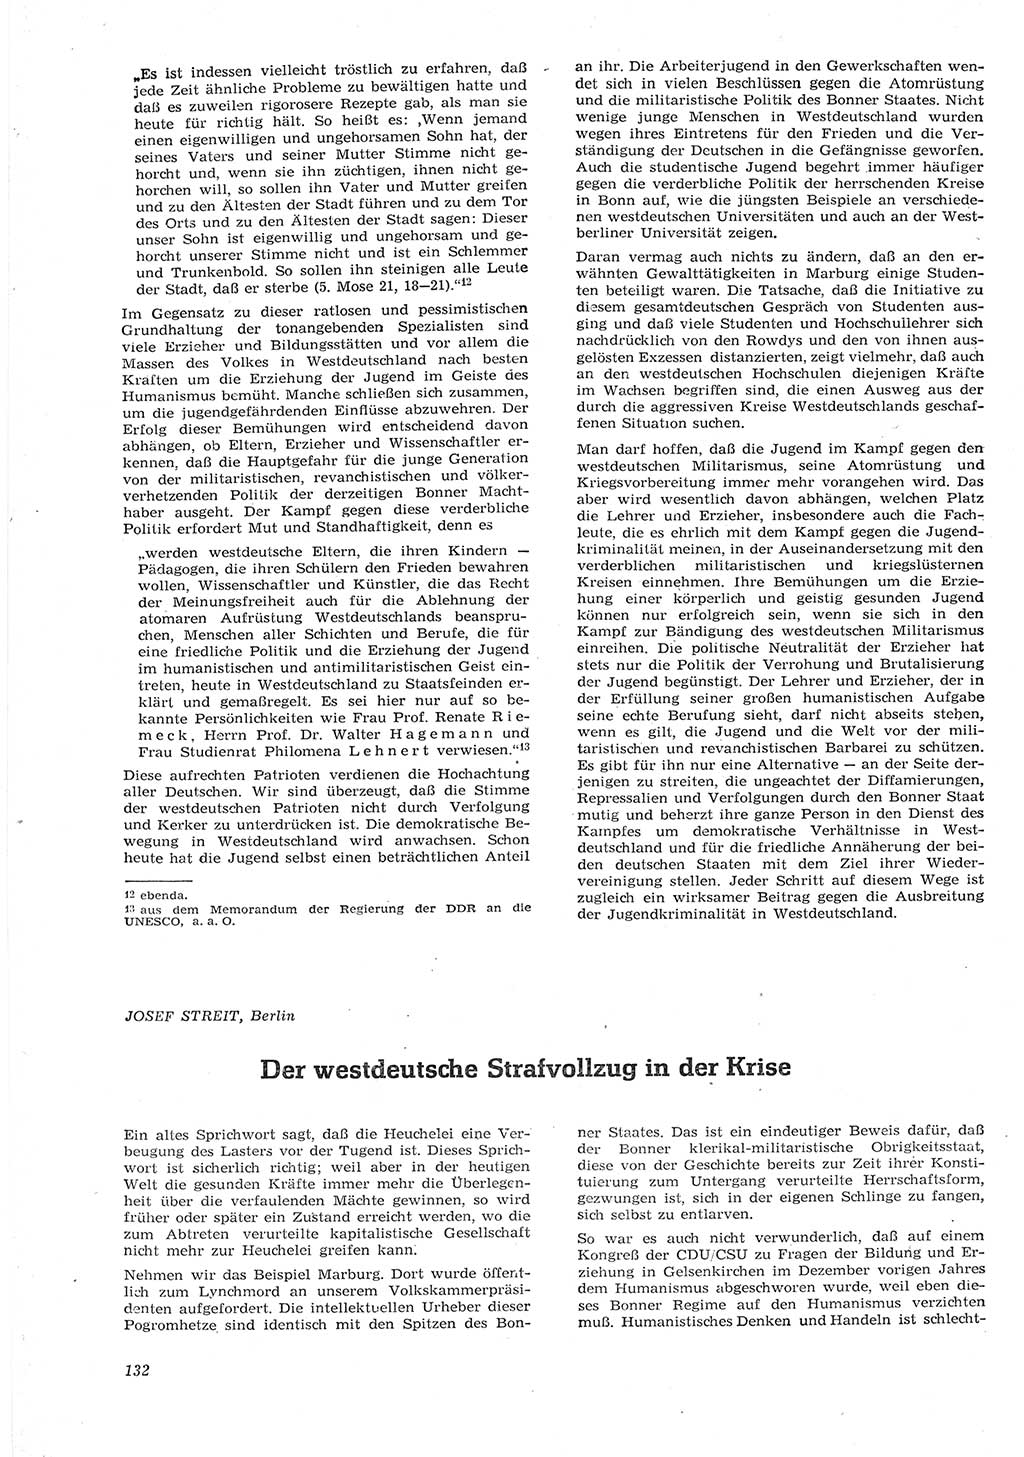 Neue Justiz (NJ), Zeitschrift für Recht und Rechtswissenschaft [Deutsche Demokratische Republik (DDR)], 15. Jahrgang 1961, Seite 132 (NJ DDR 1961, S. 132)